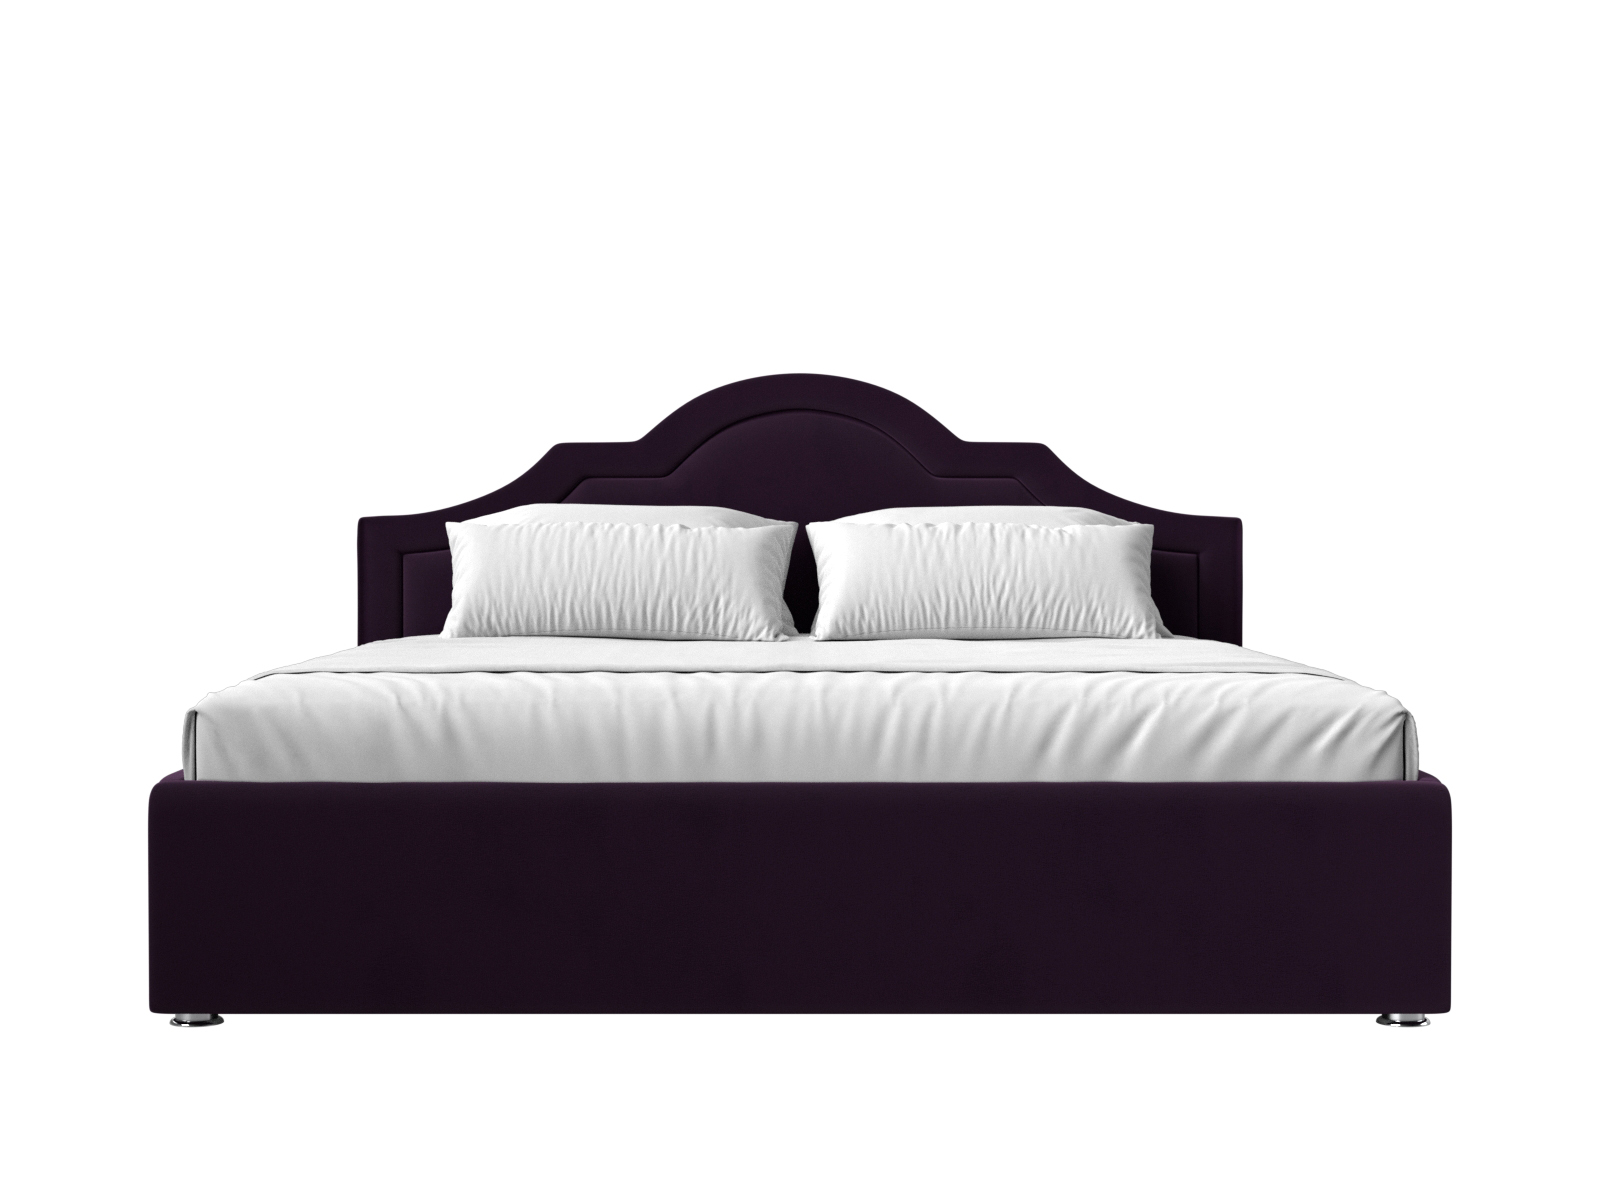 Интерьерная кровать Афина 200 (Фиолетовый)